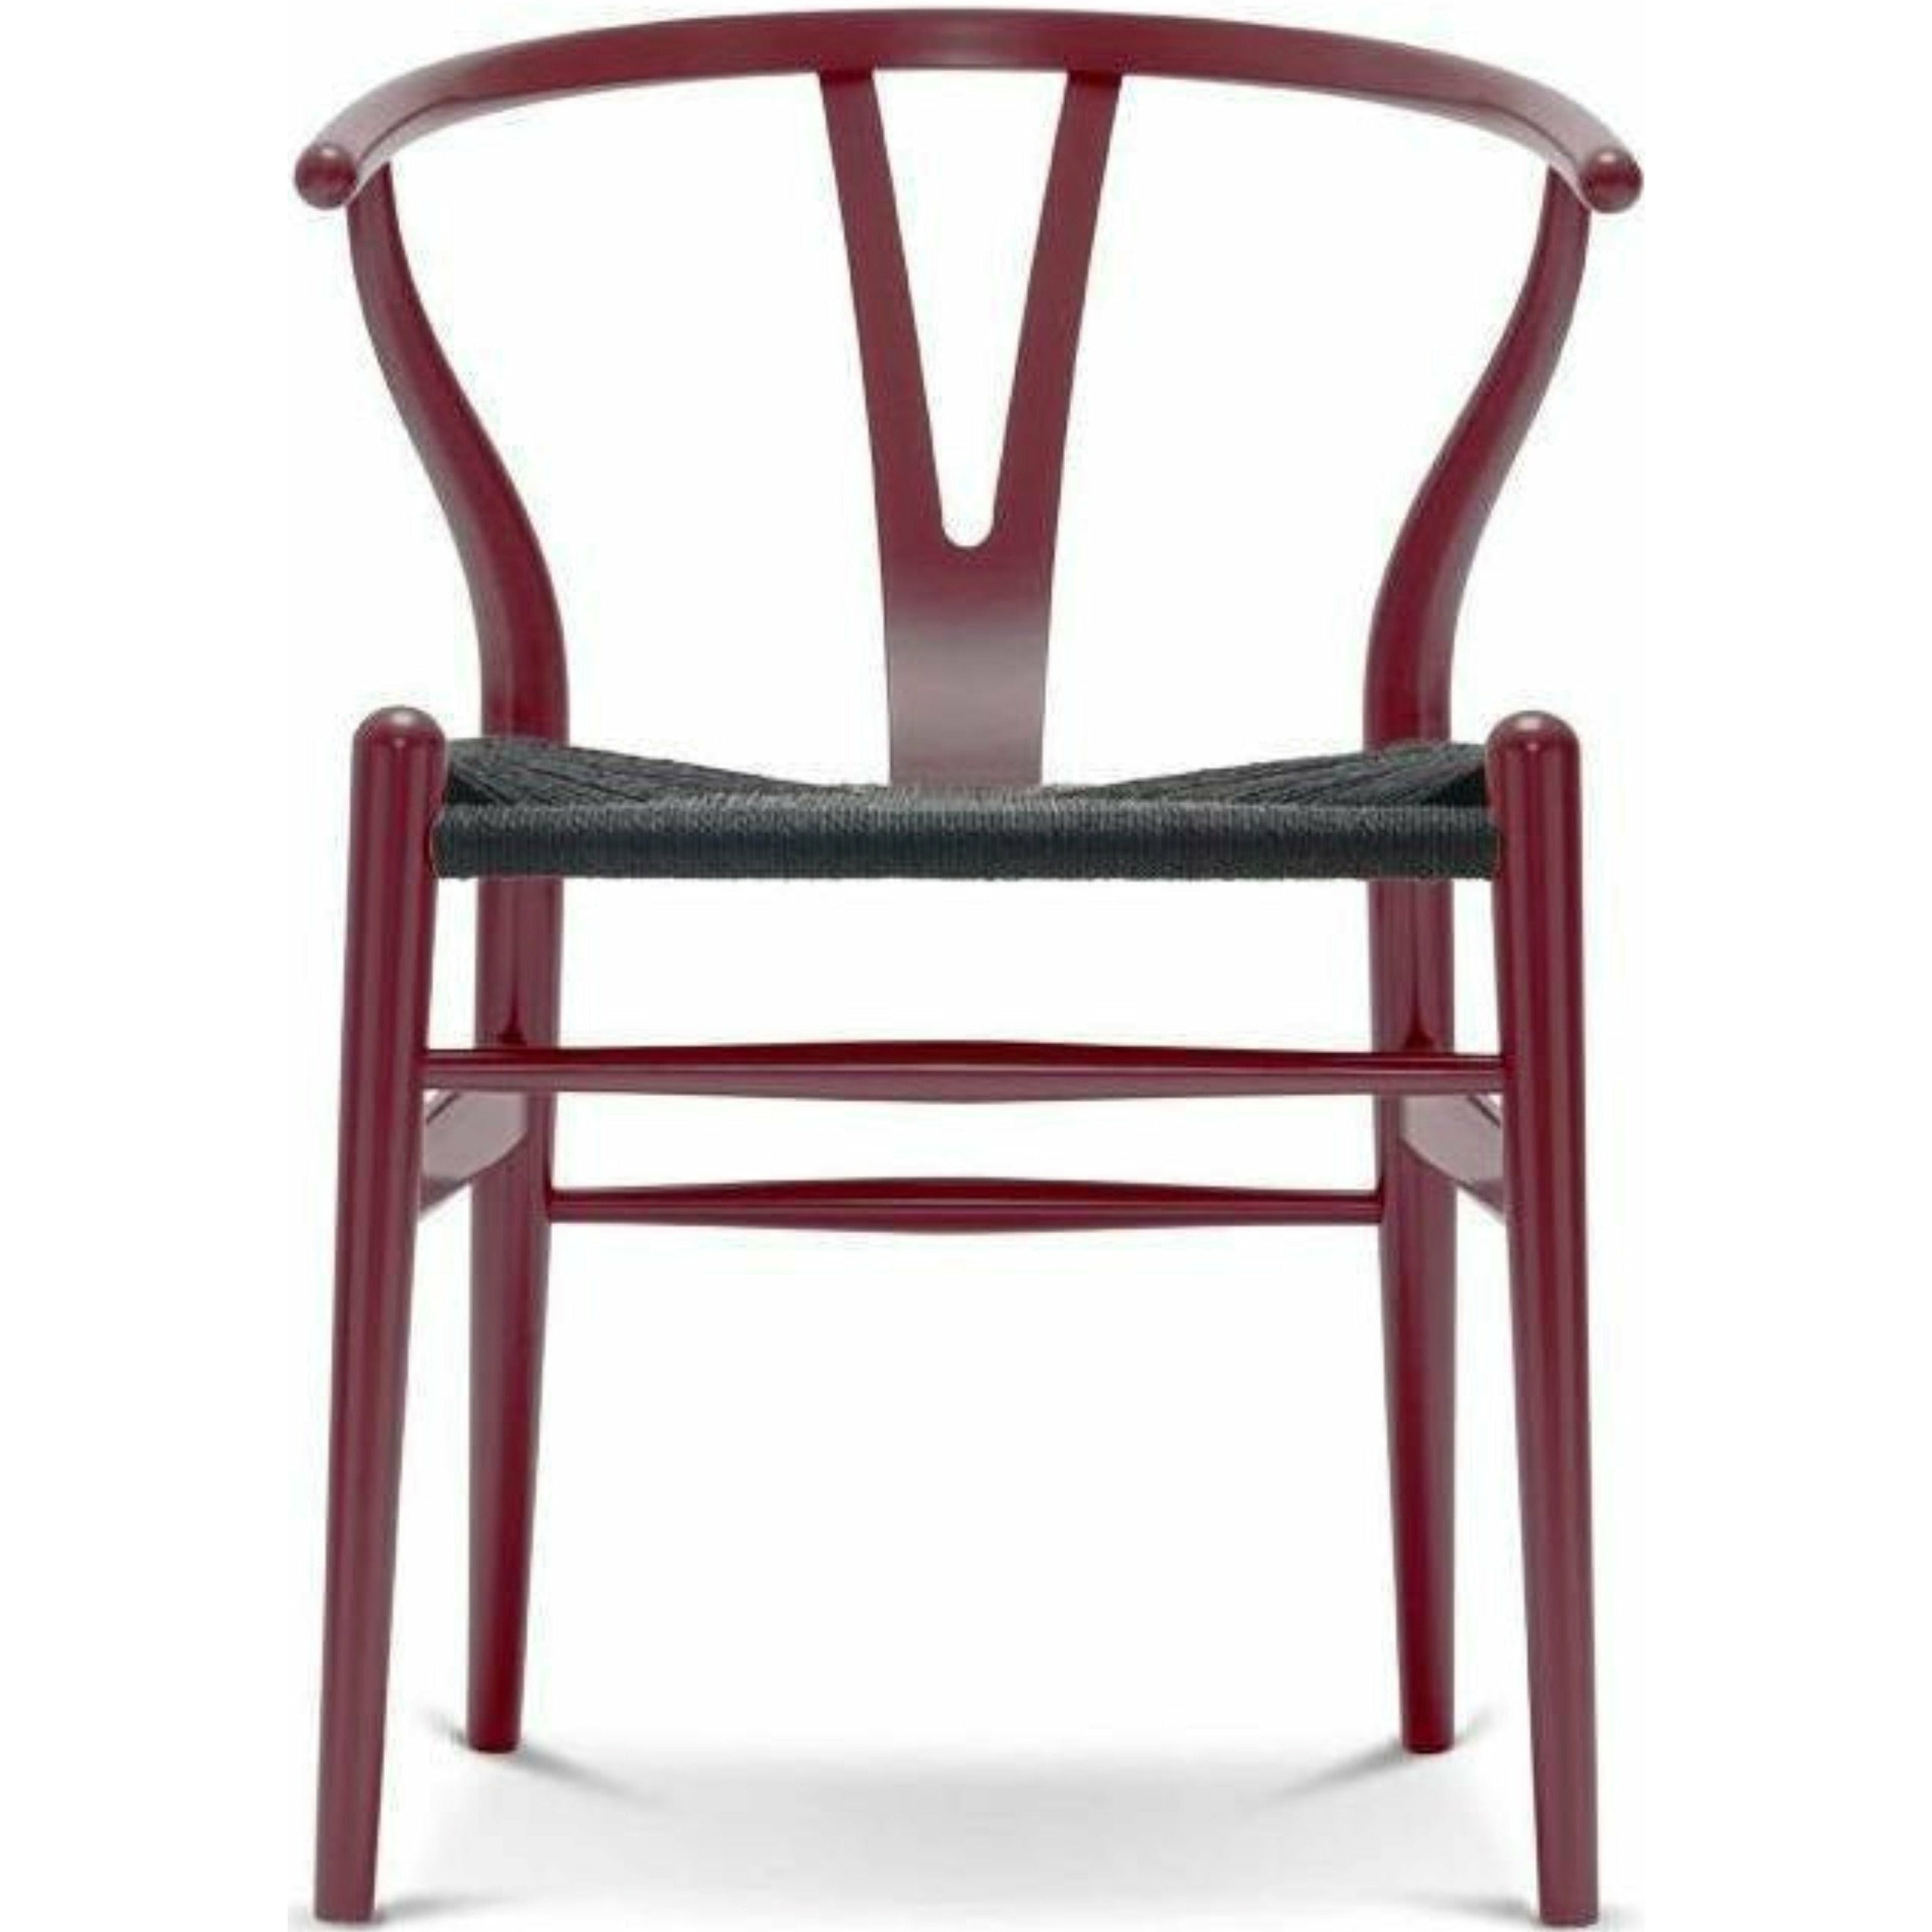 Carl Hansen CH24 Y chaise chaise cordon en papier noir, hêtre / baie rouge